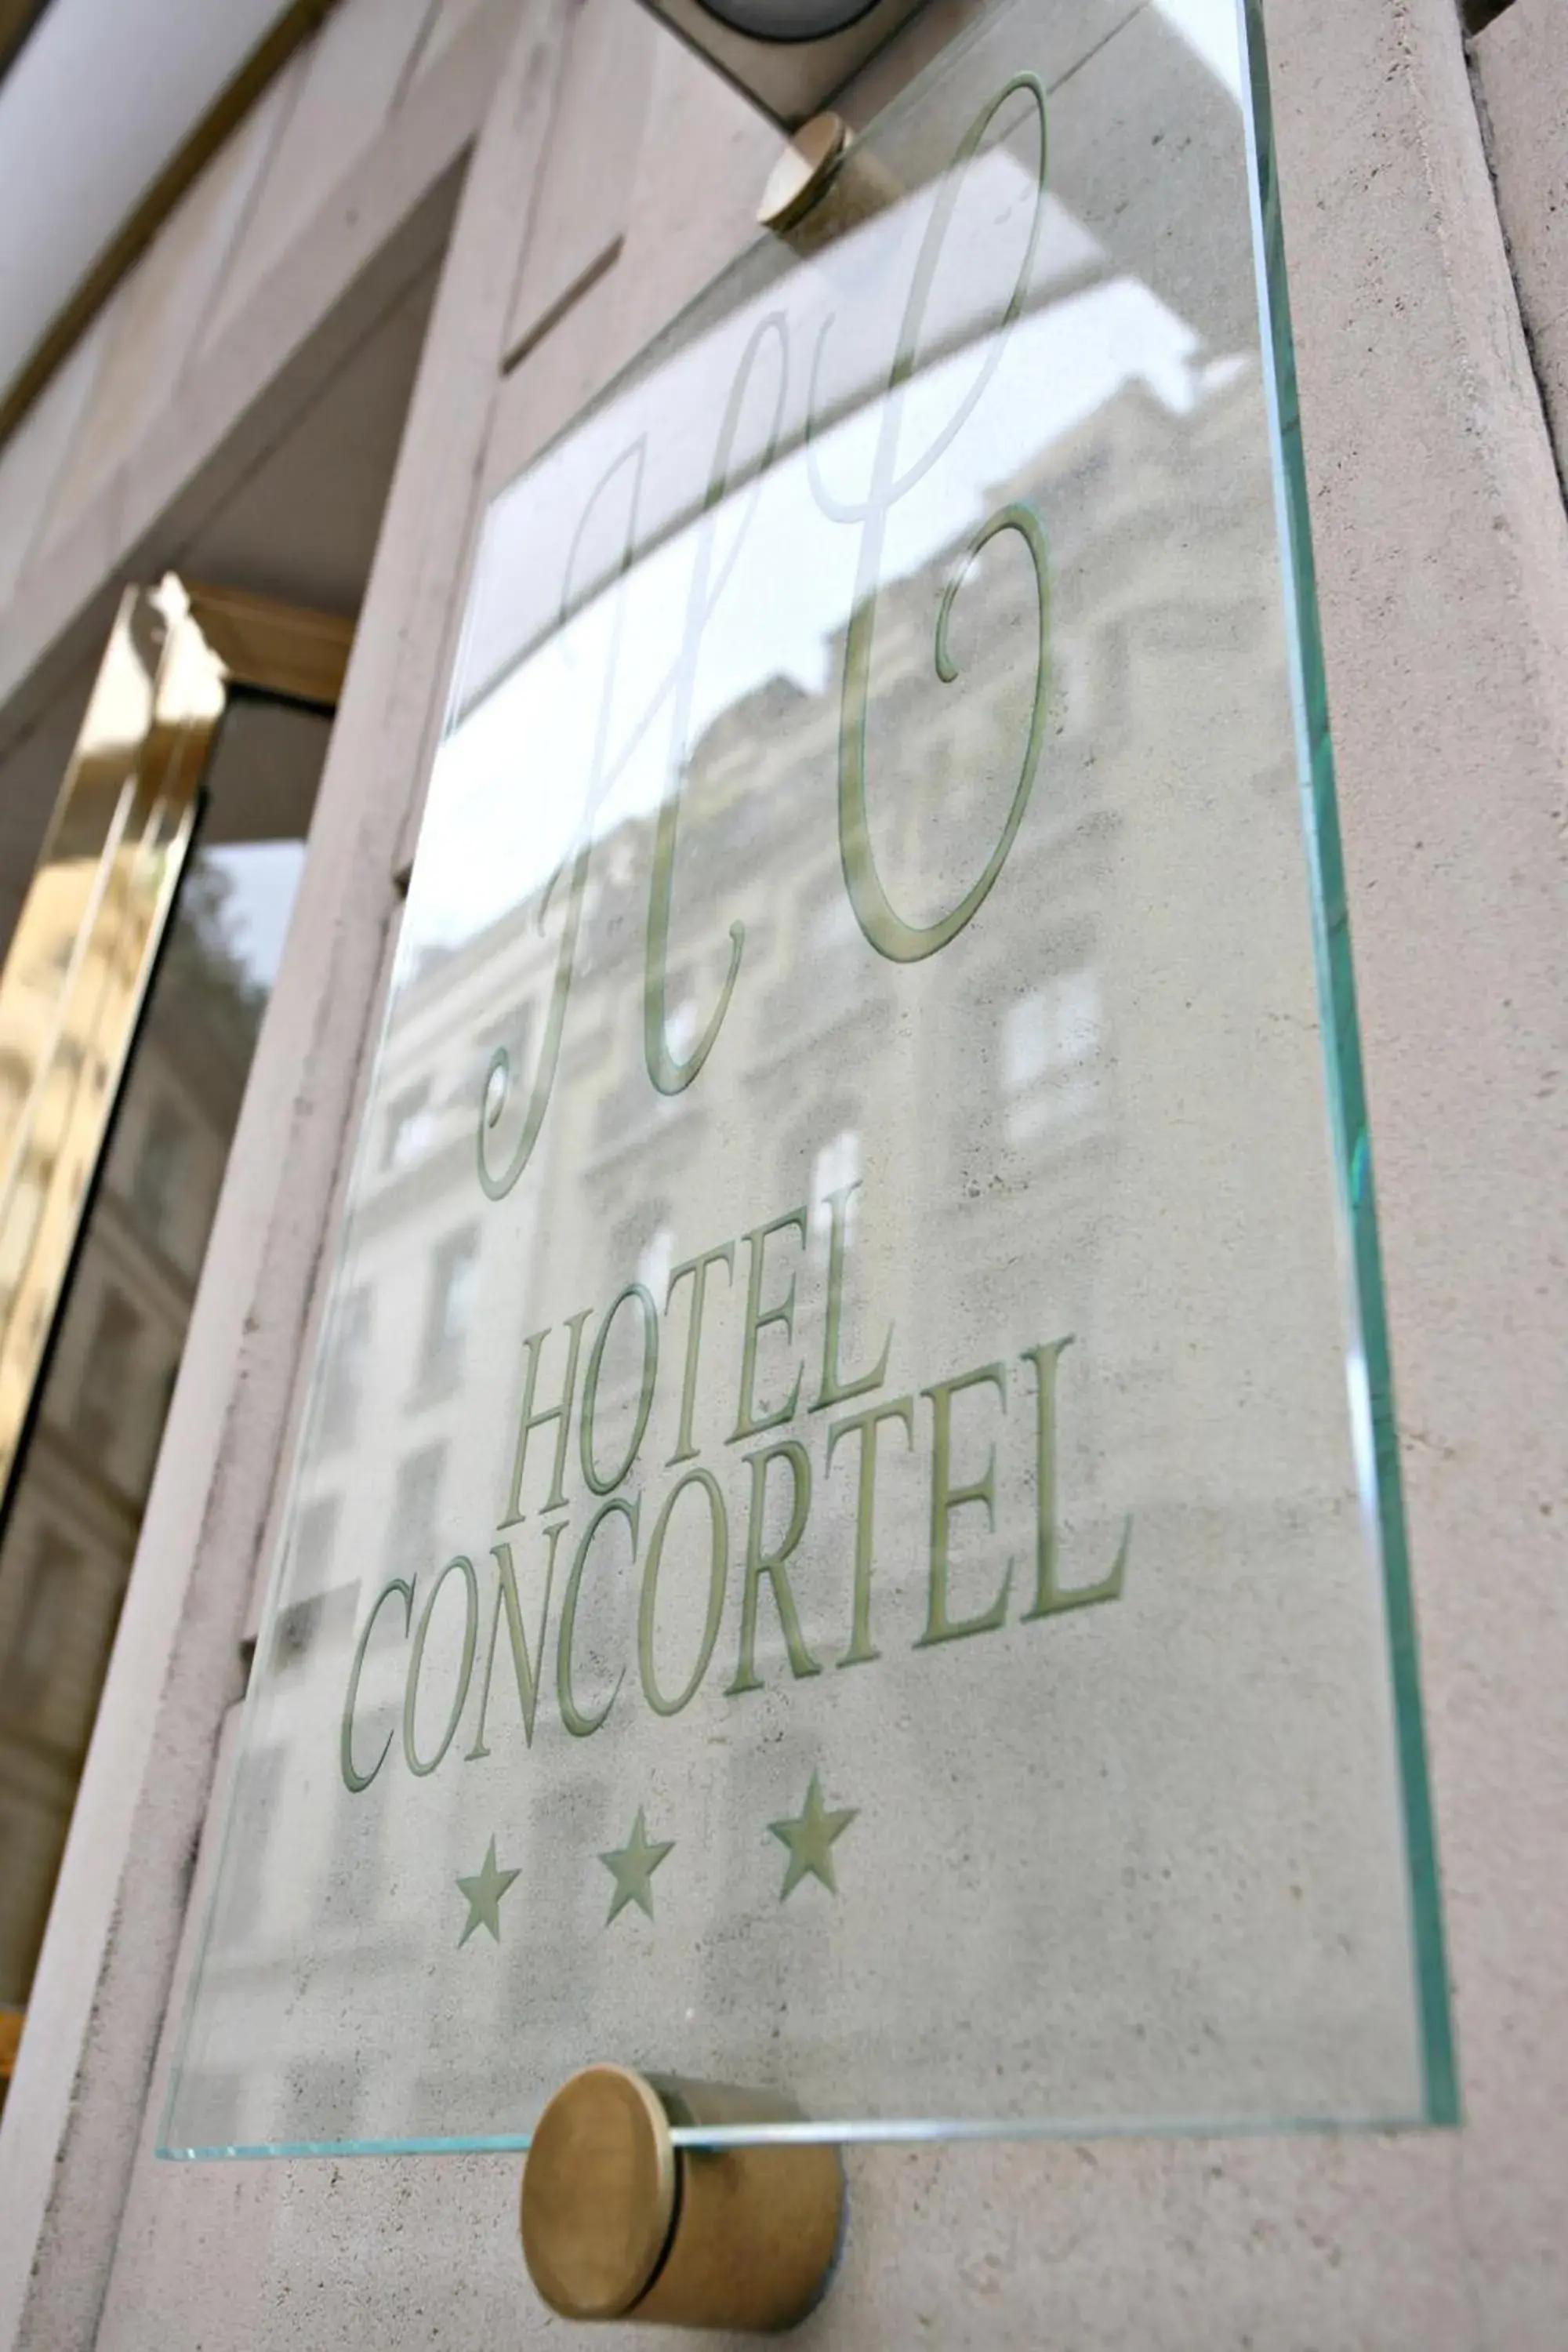 Facade/entrance in Hotel Concortel